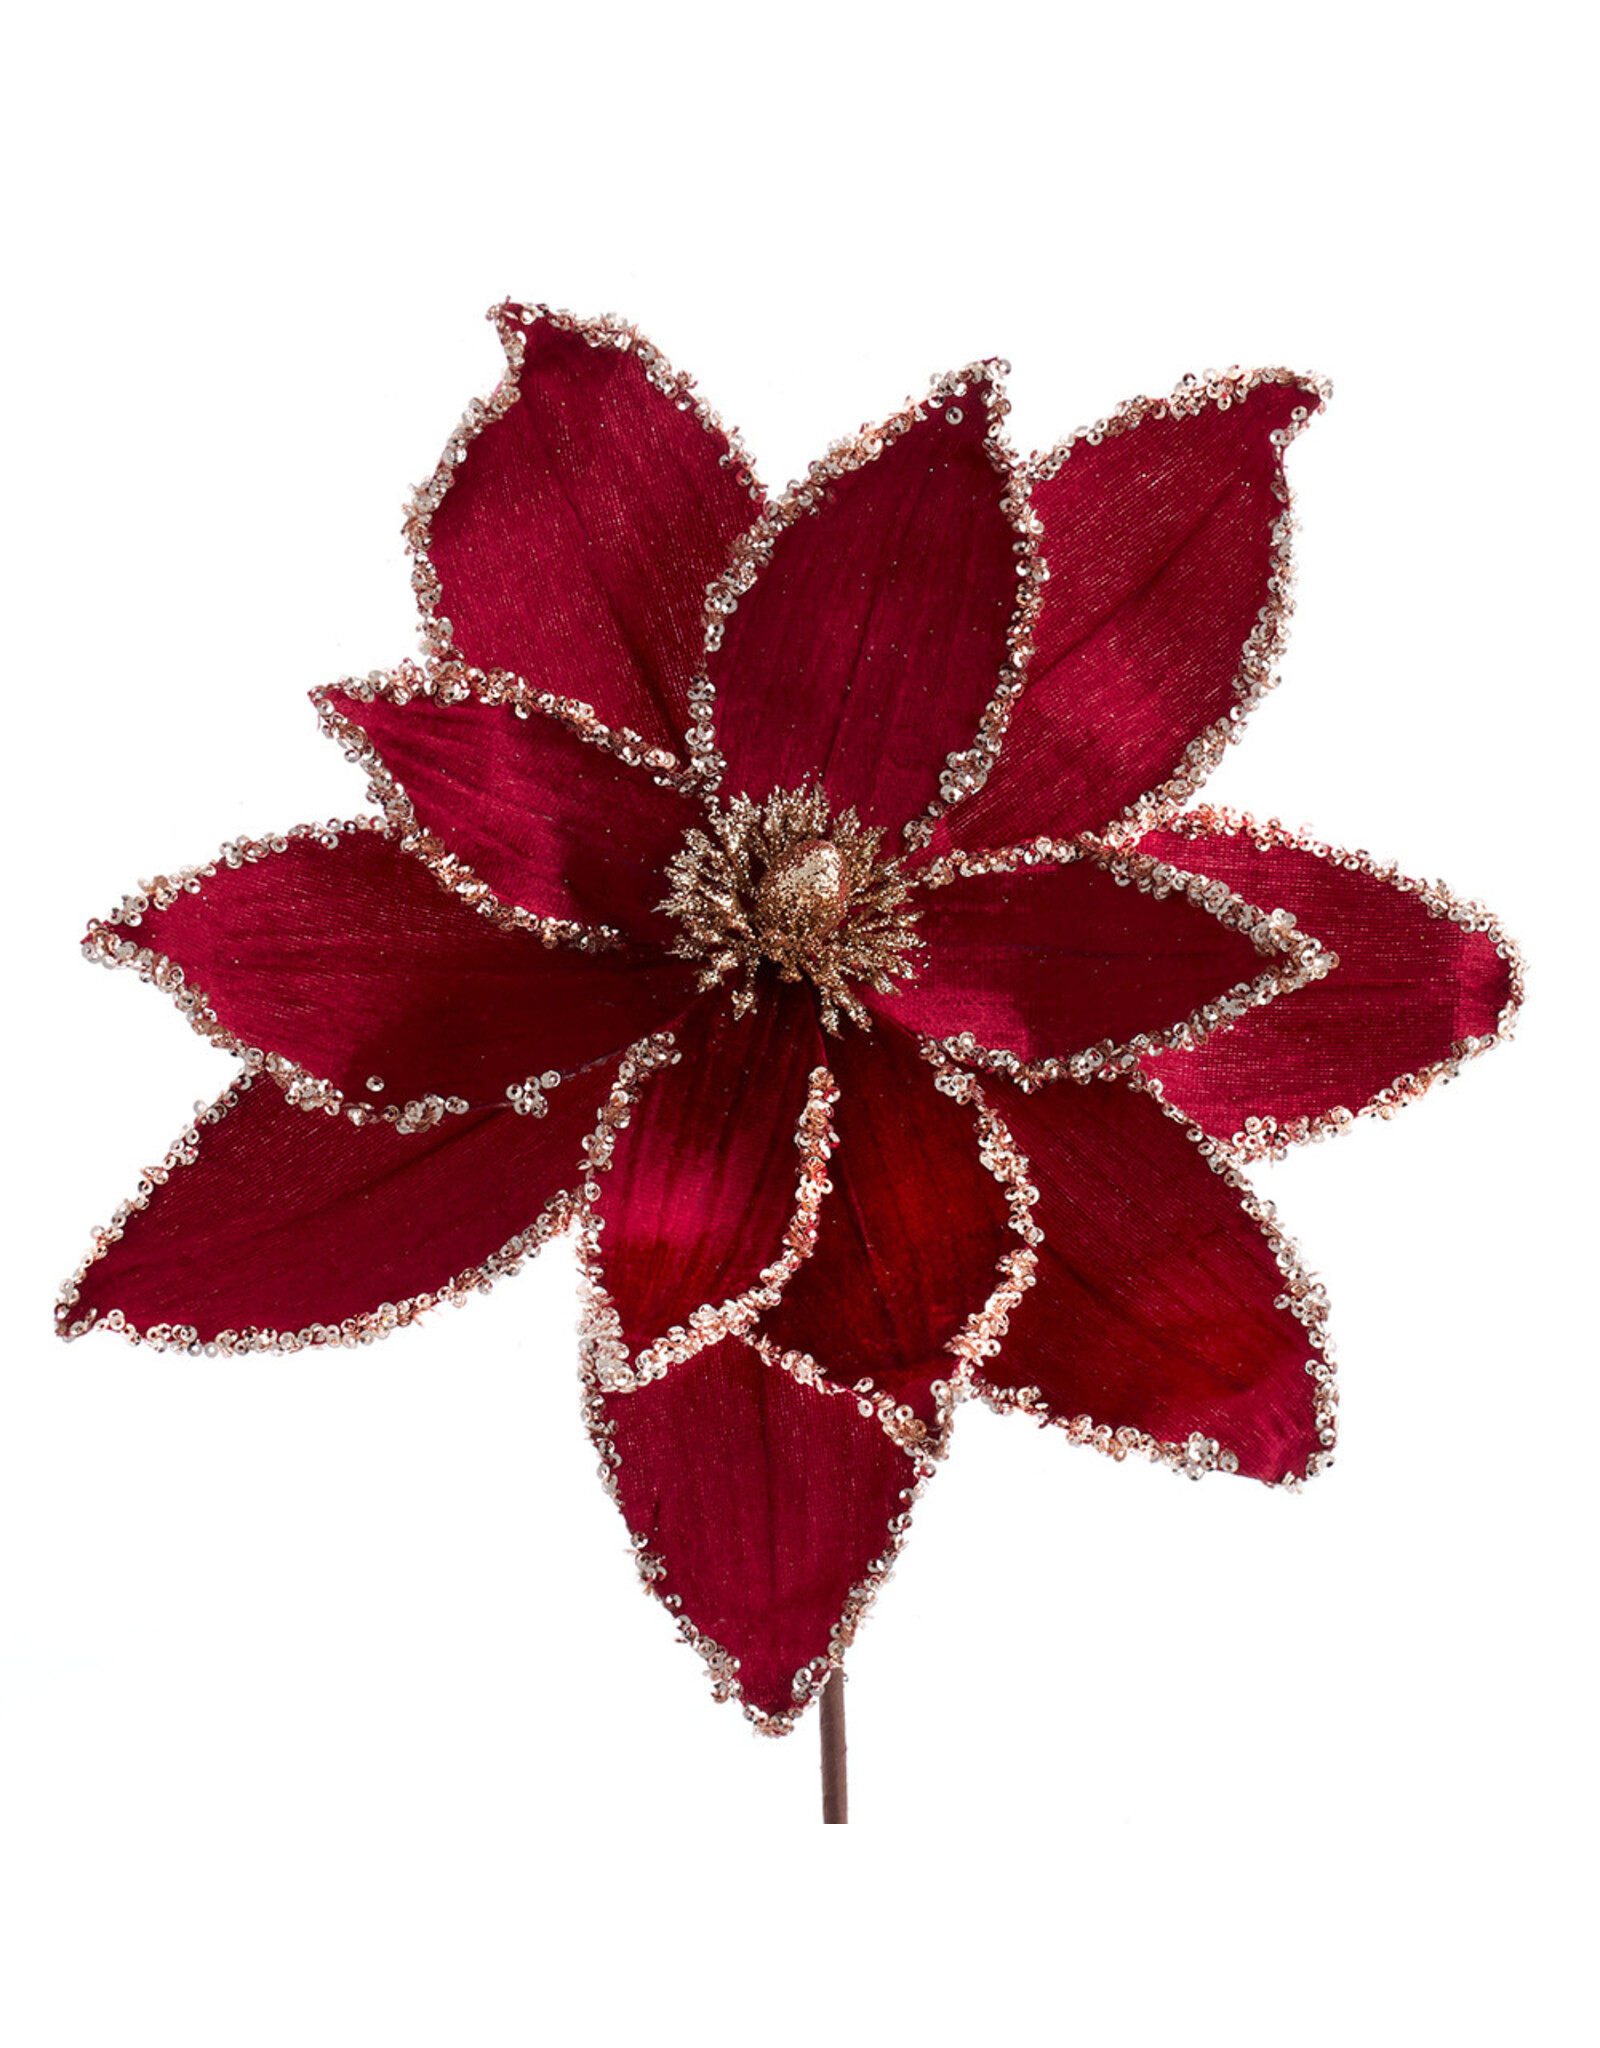 Kurt Adler Poinsettias & Picks Burgundy Red Velvet Flower Pick